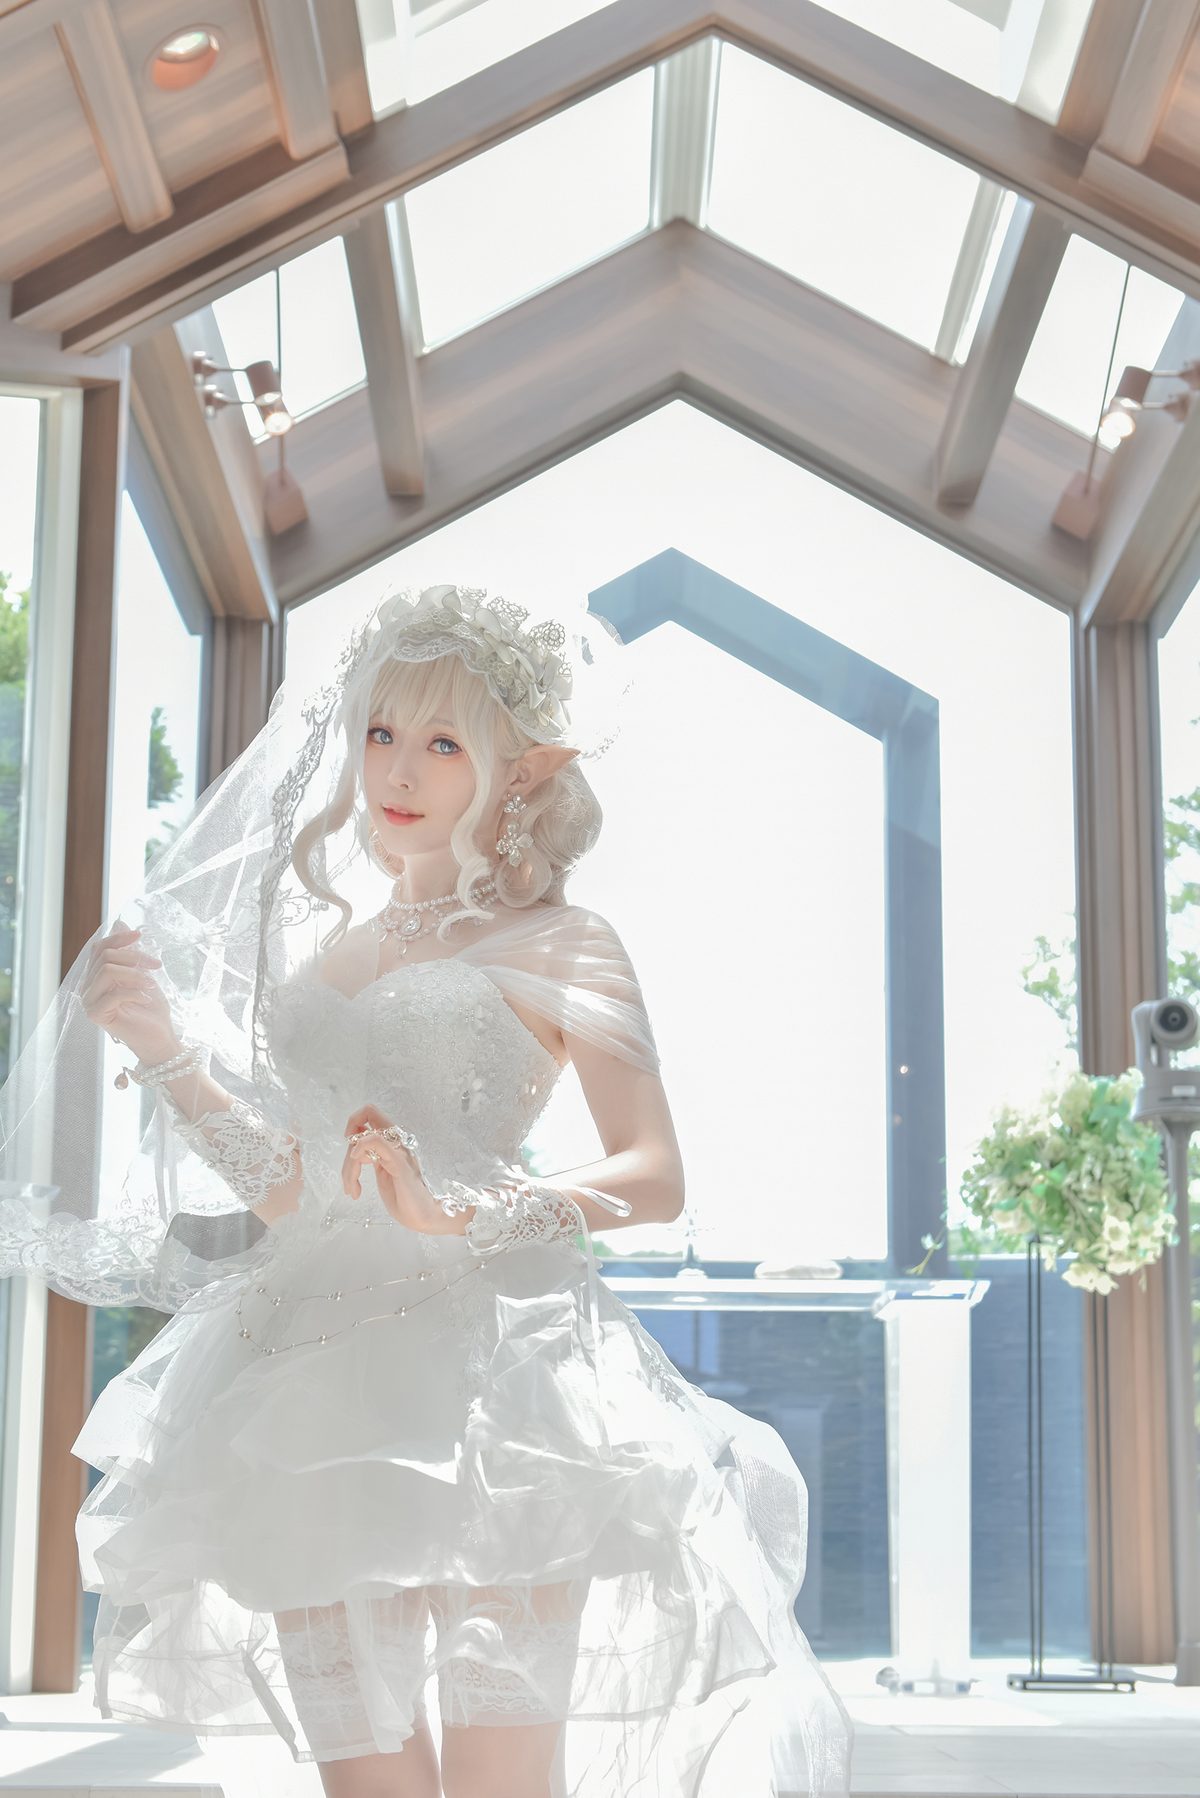 Coser@Ely_eee ElyEE子 Bride And Lingerie 0024 2702829636.jpg